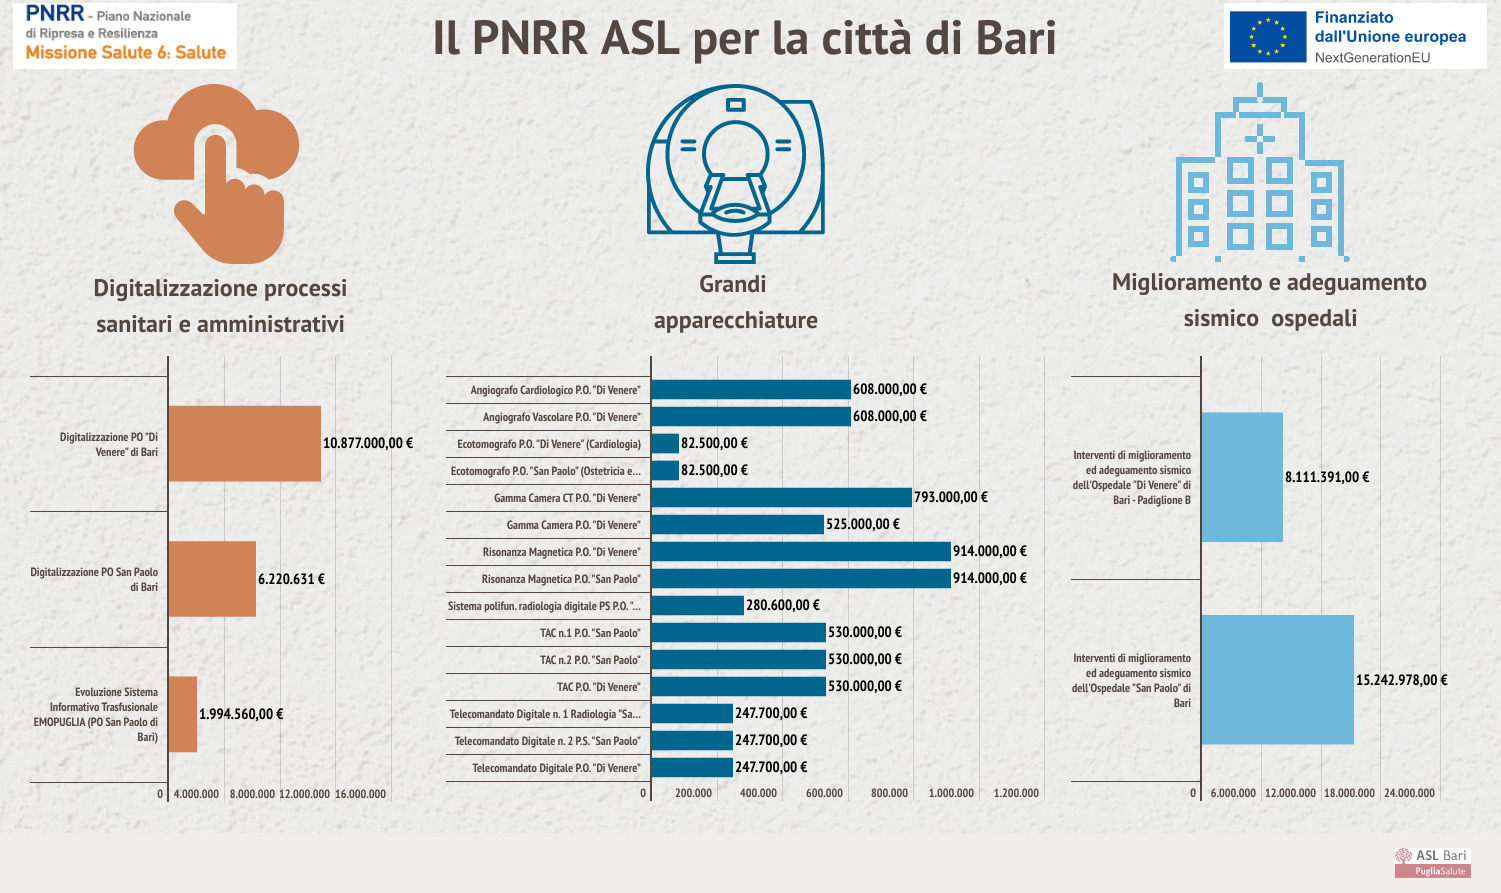 Galleria PNRR, il piano della ASL per la città di Bari: 60 milioni per potenziare territorio e ospedali - Diapositiva 13 di 15